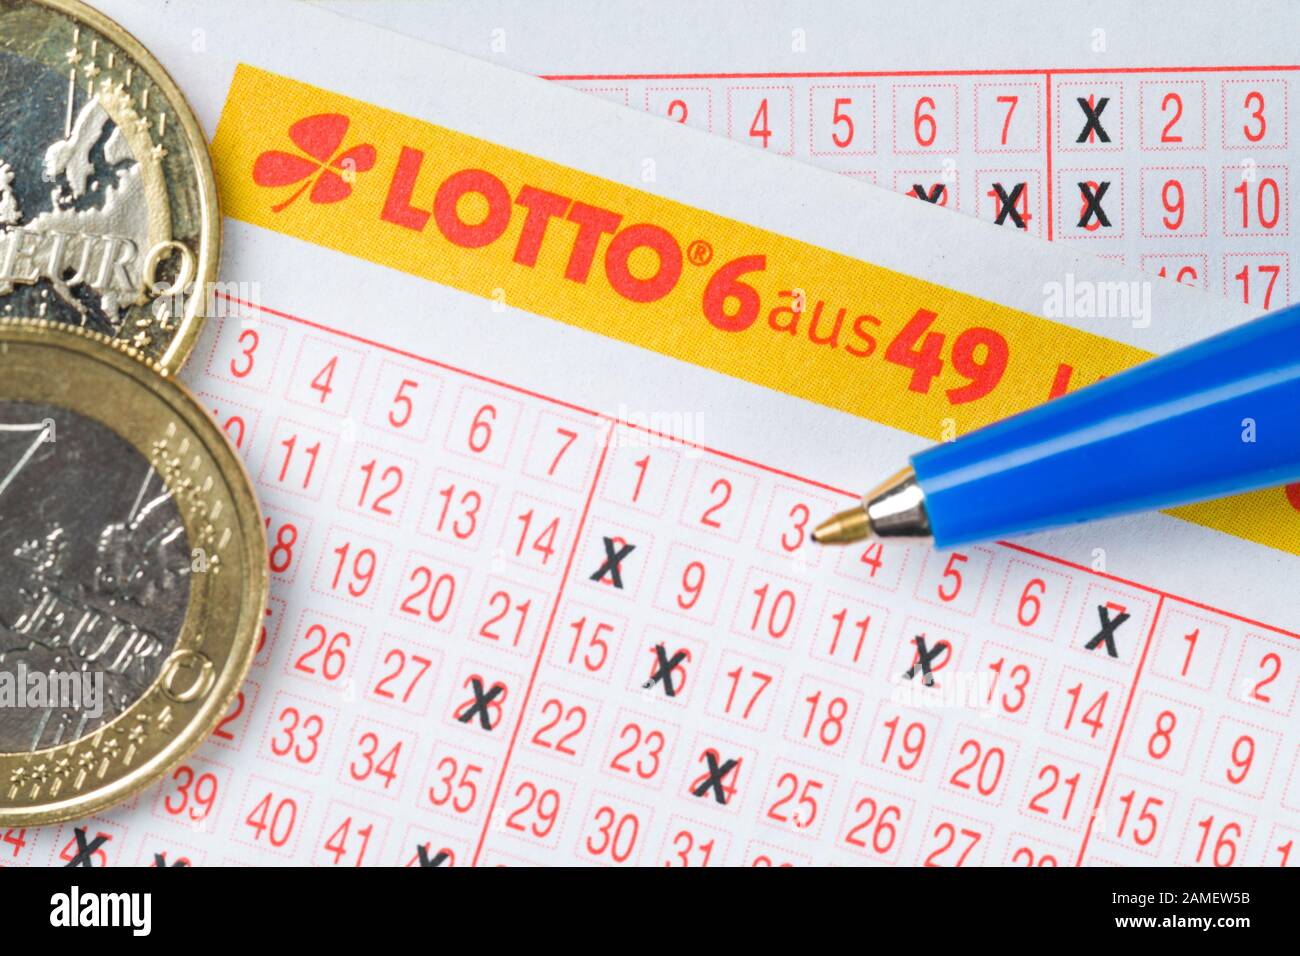 Spielschein, Lotto, 6 aus 49 Stock Photo - Alamy